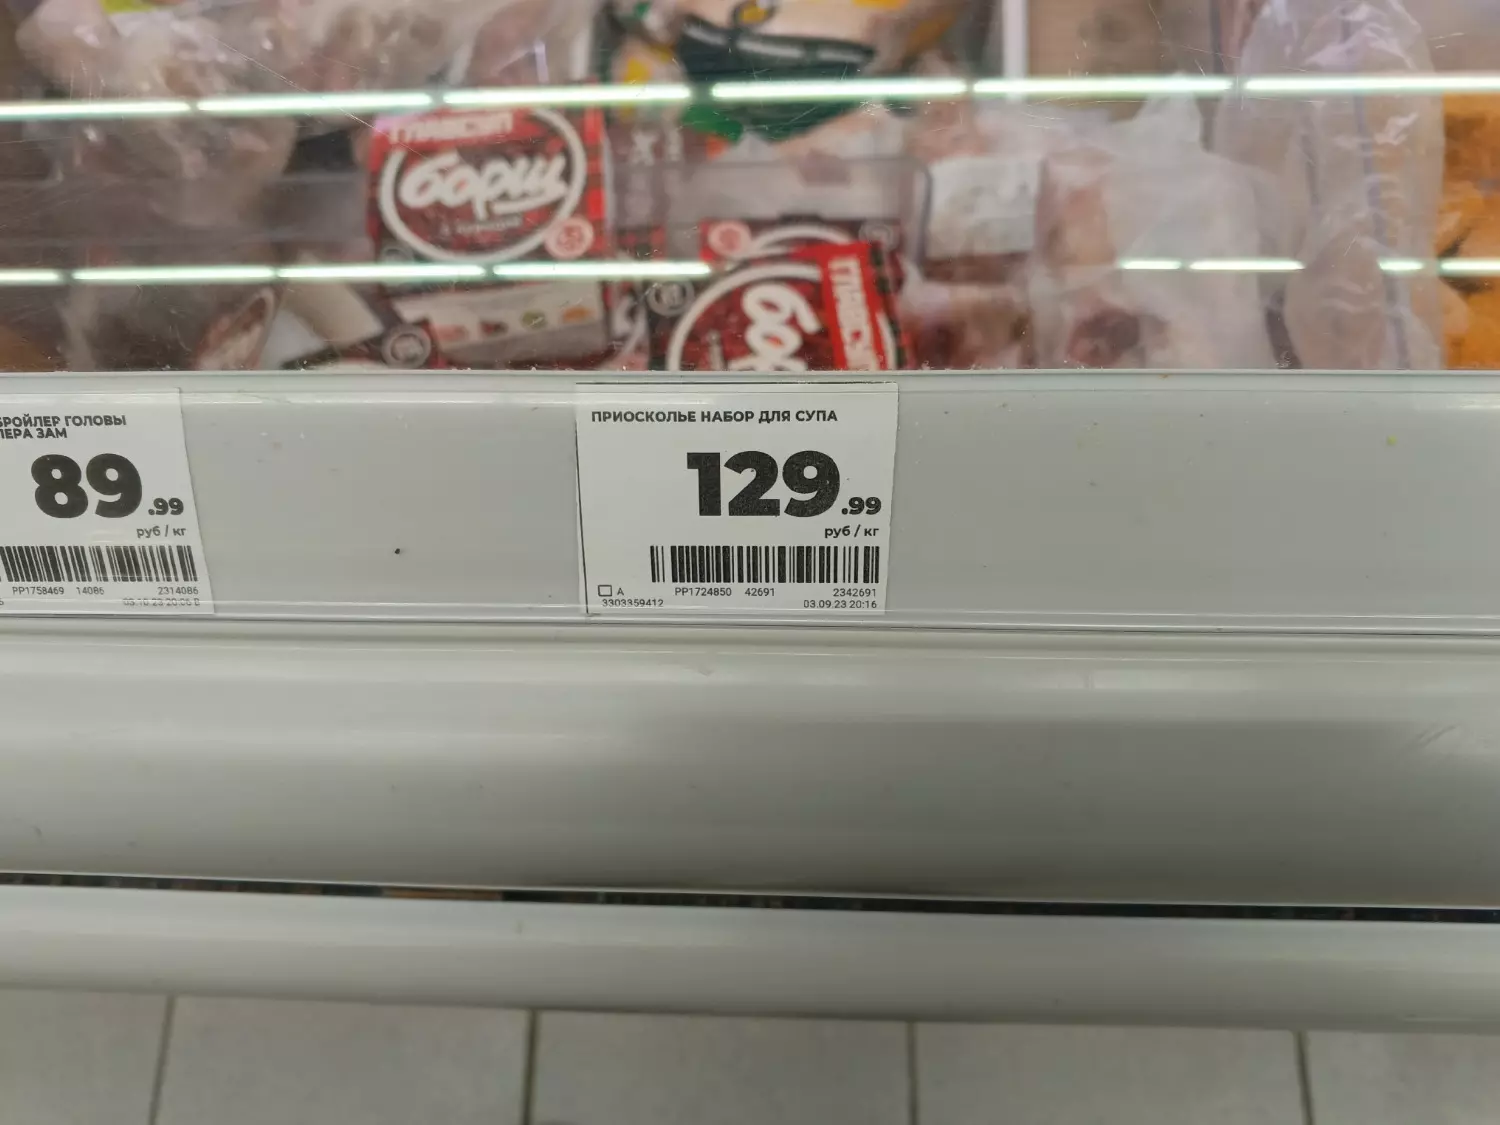 Цена на курицу "Приосколье", Магнит